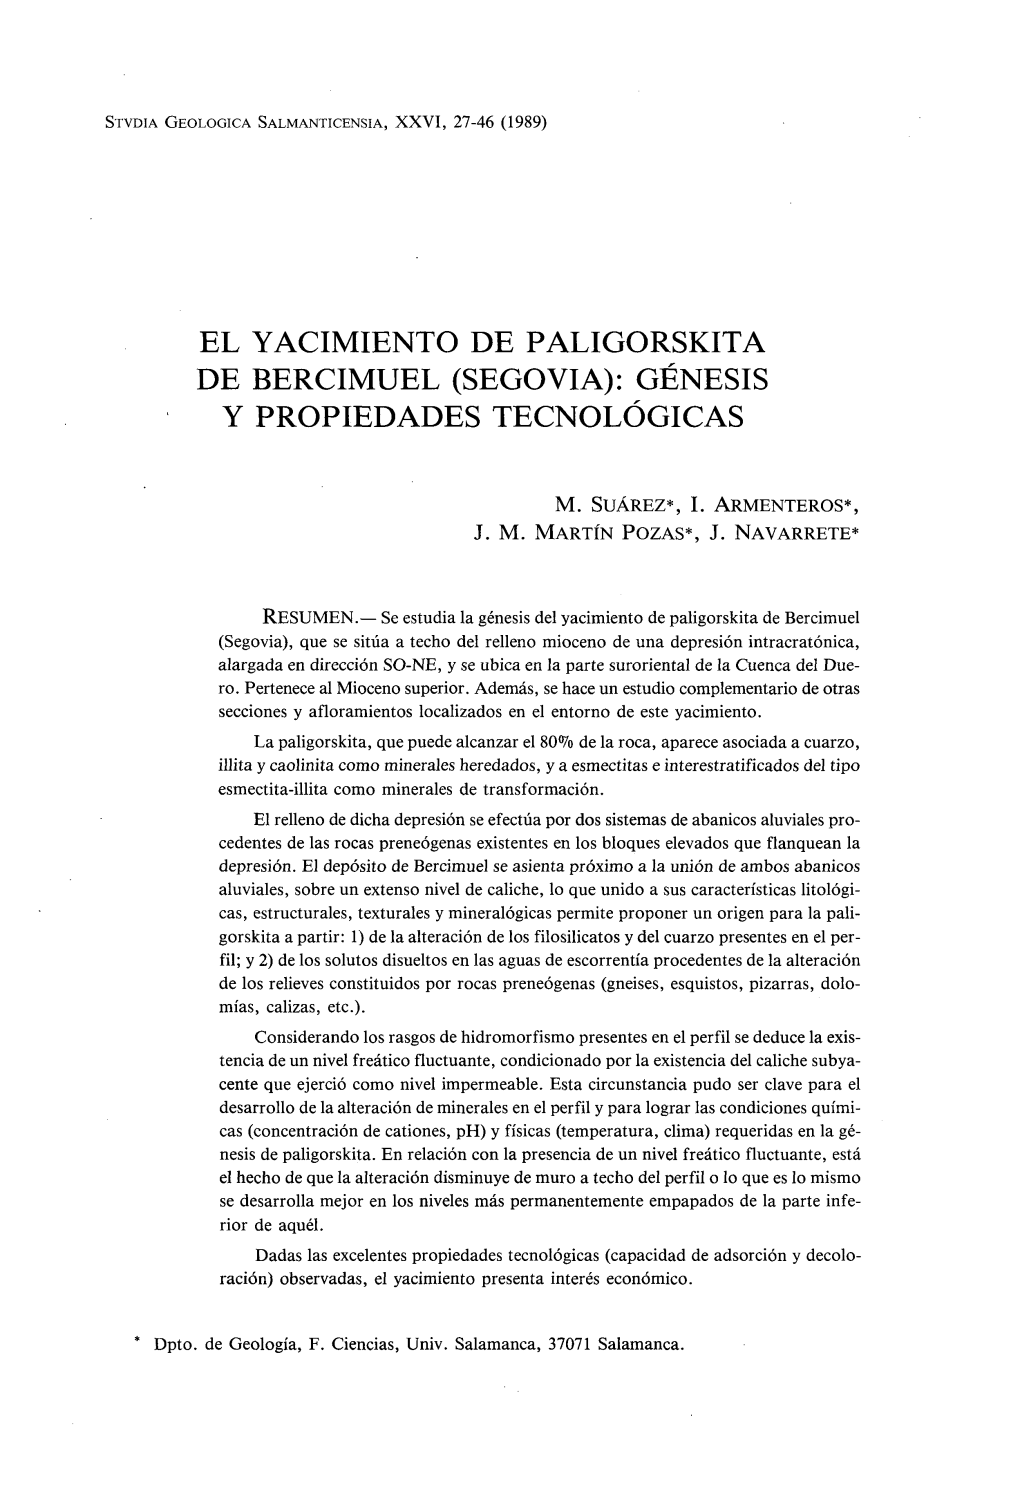 El Yacimiento De Paligorskita De Bercimuel (Segovia): Génesis Y Propiedades Tecnológicas